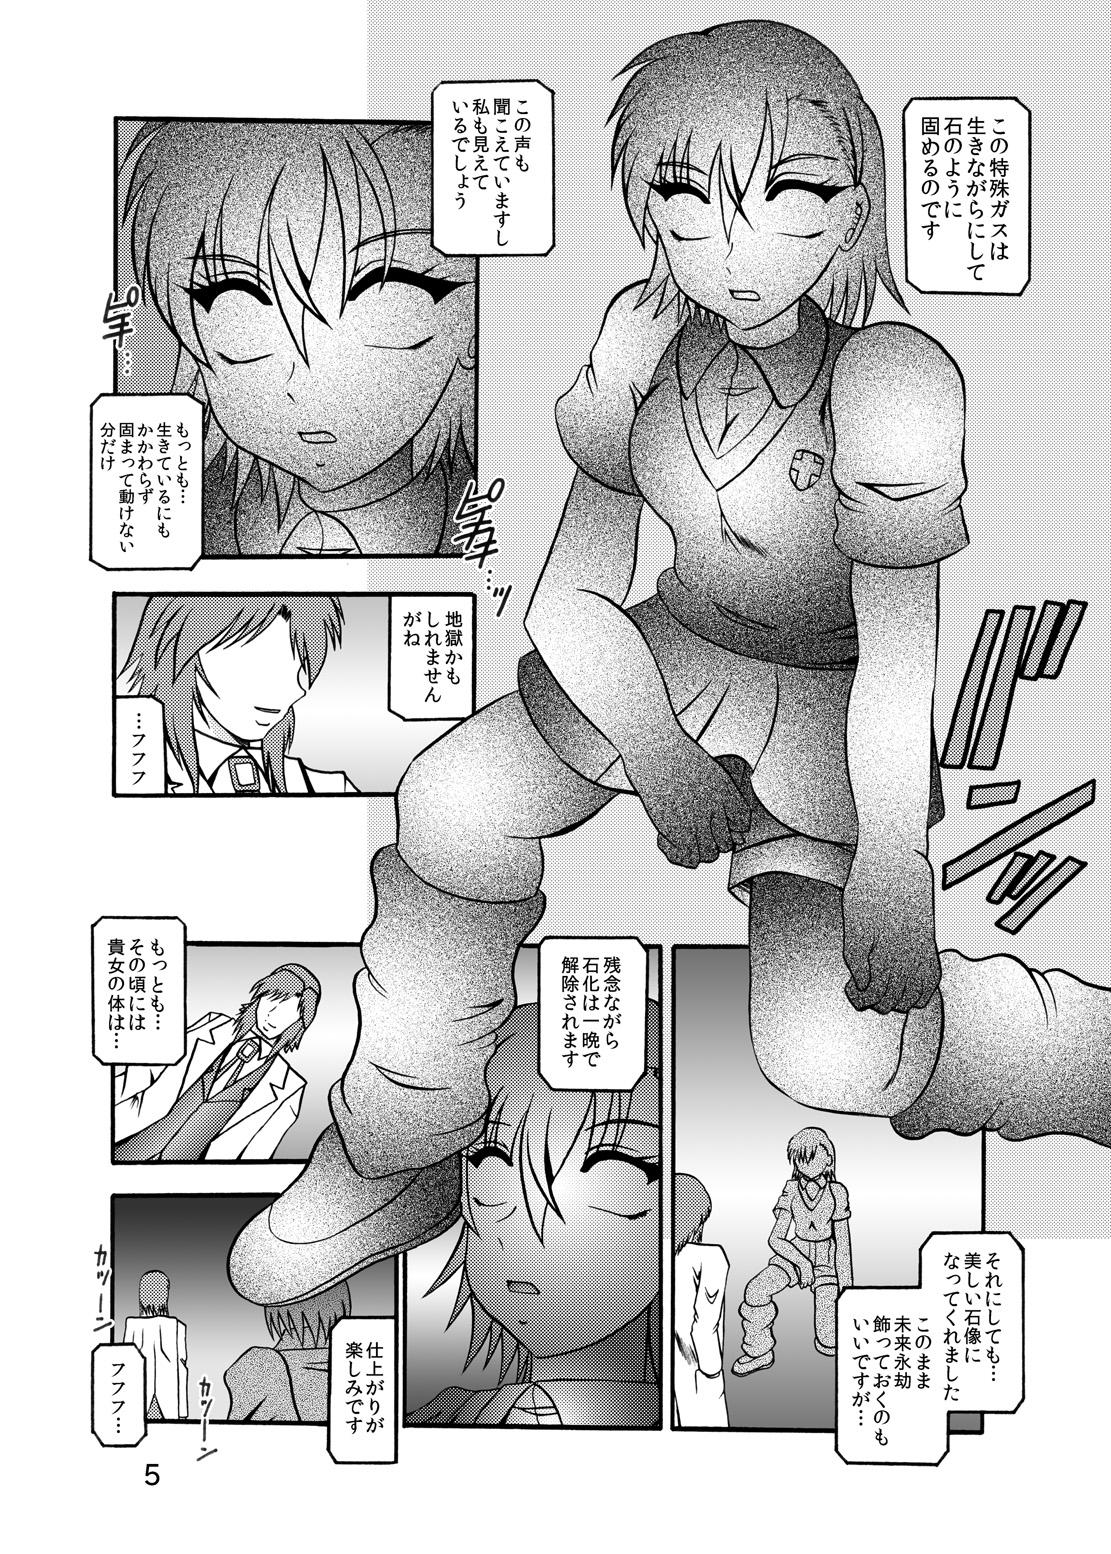 Cheerleader Inyoku Kaizou: Misaka Mikoto - Toaru kagaku no railgun Cei - Page 3